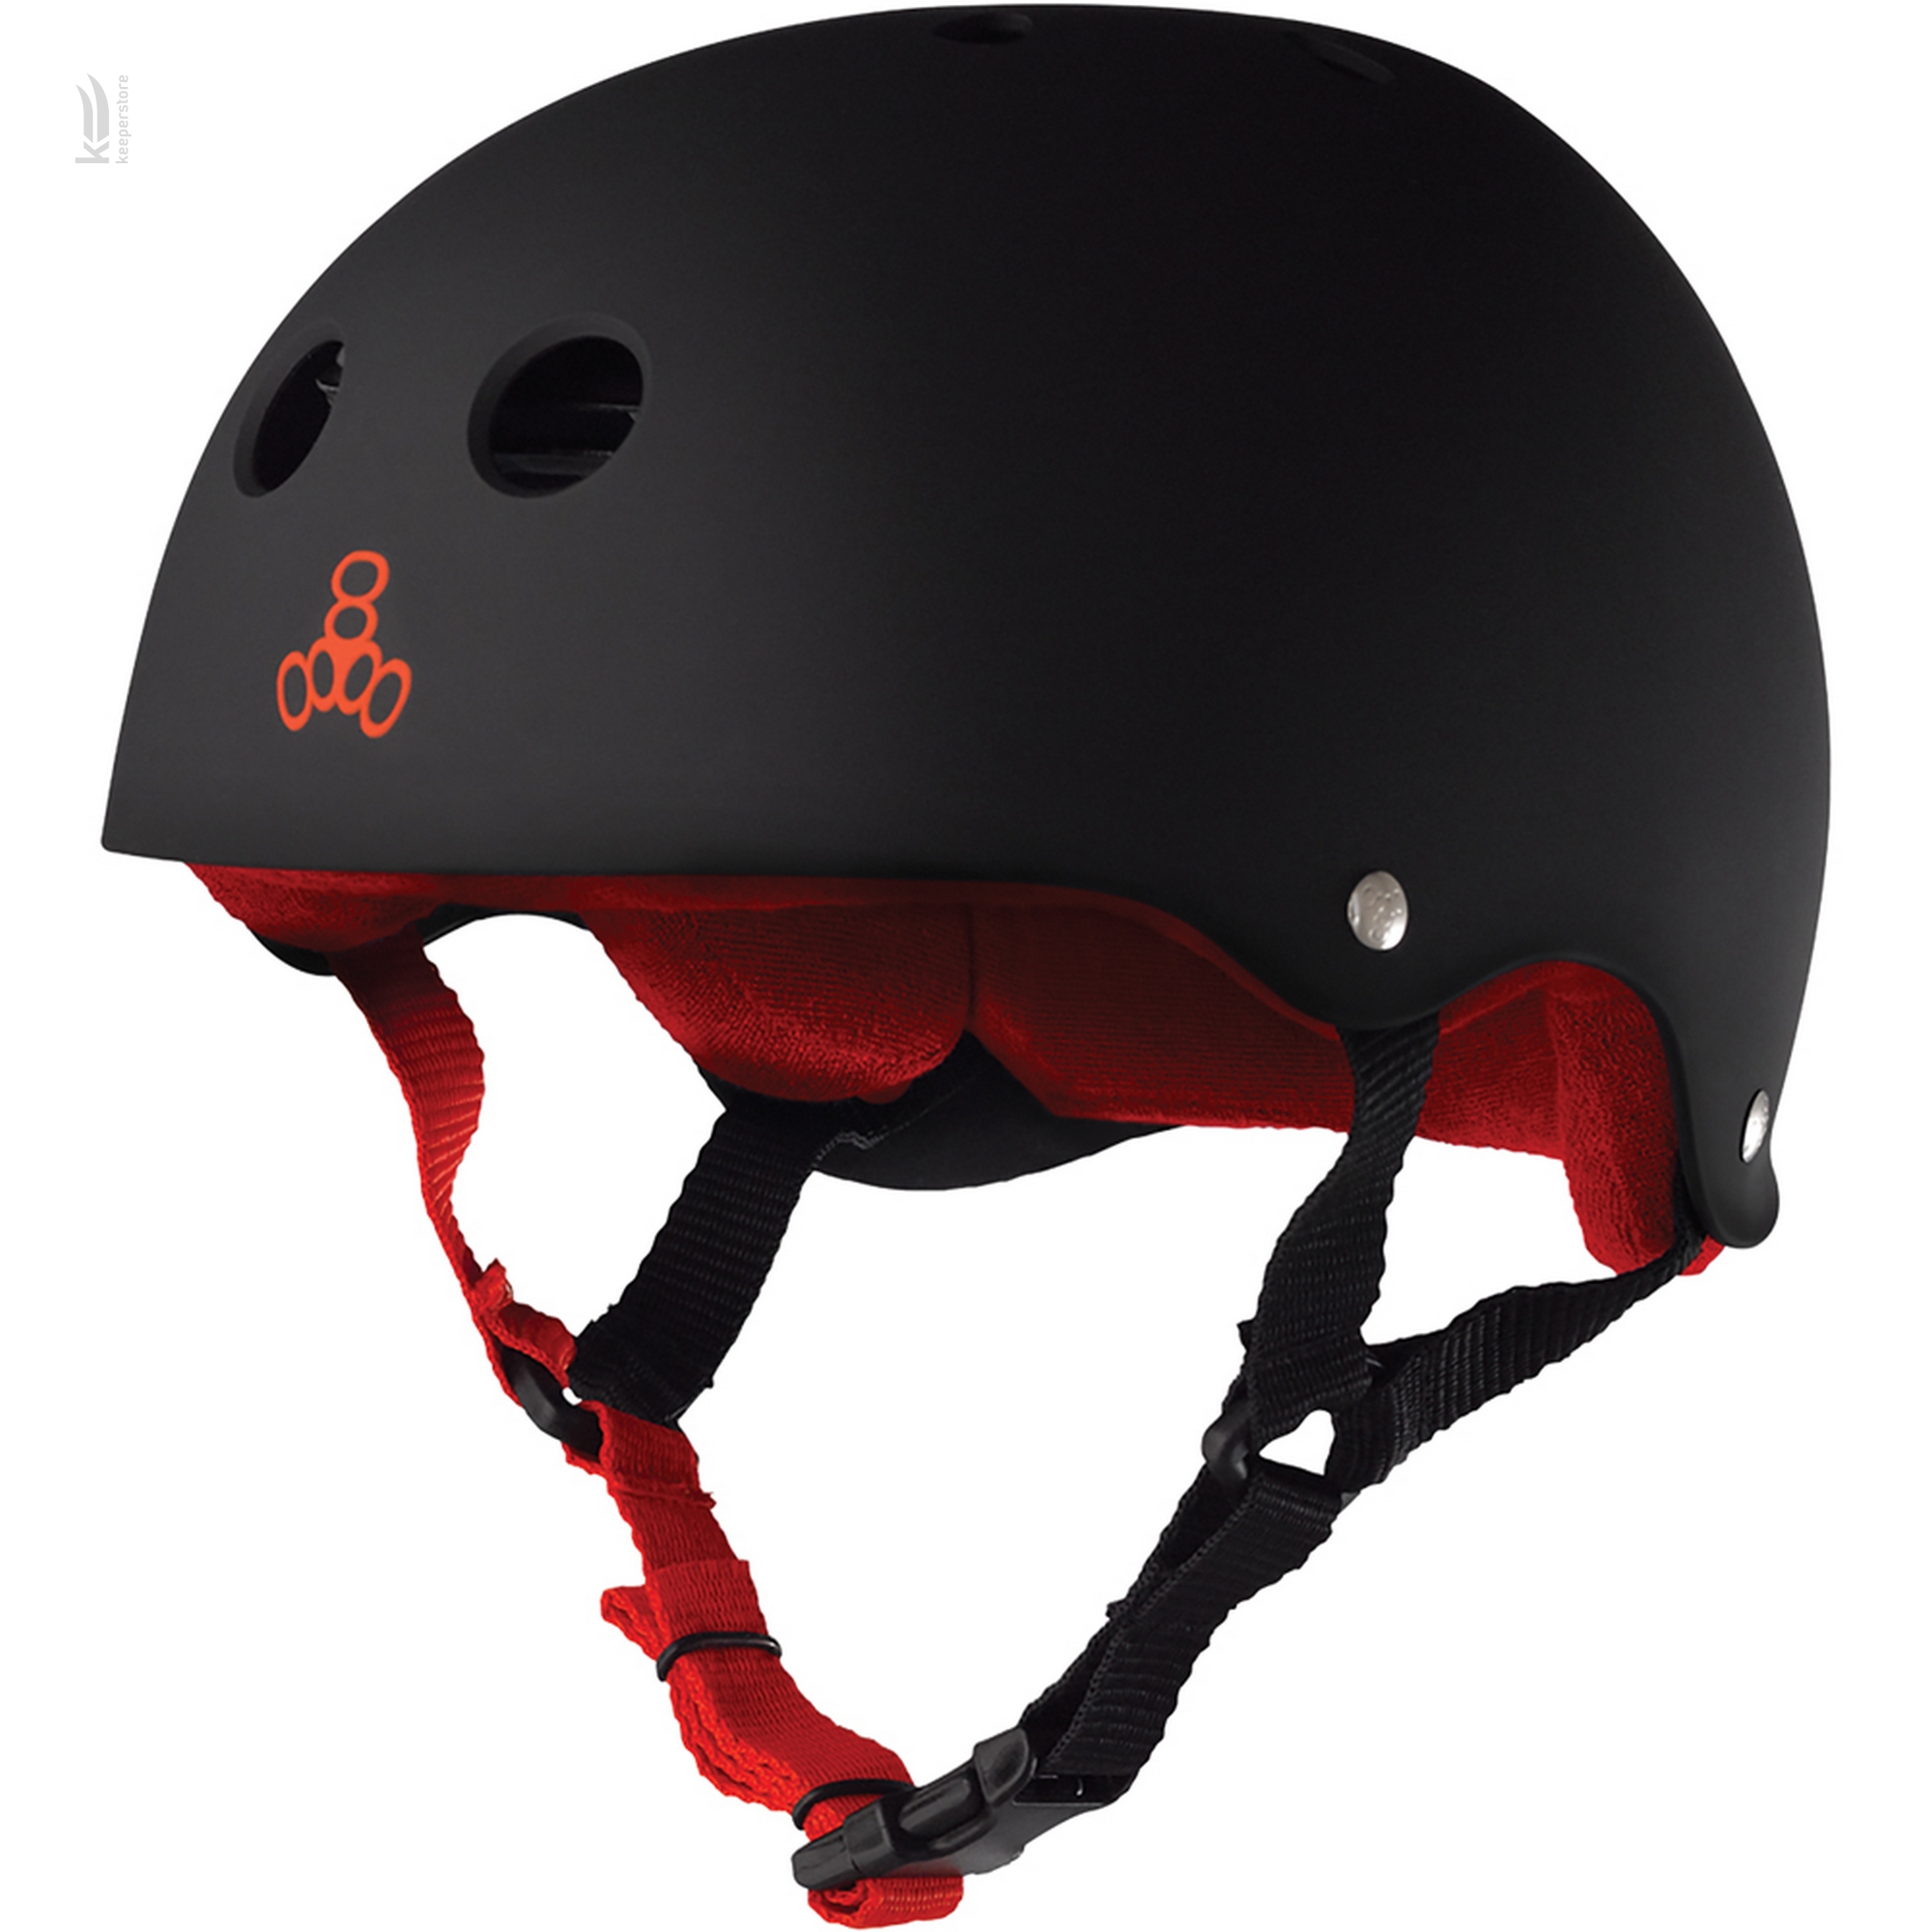 Triple8 Sweatsaver Helmet Black w/ Red (M)